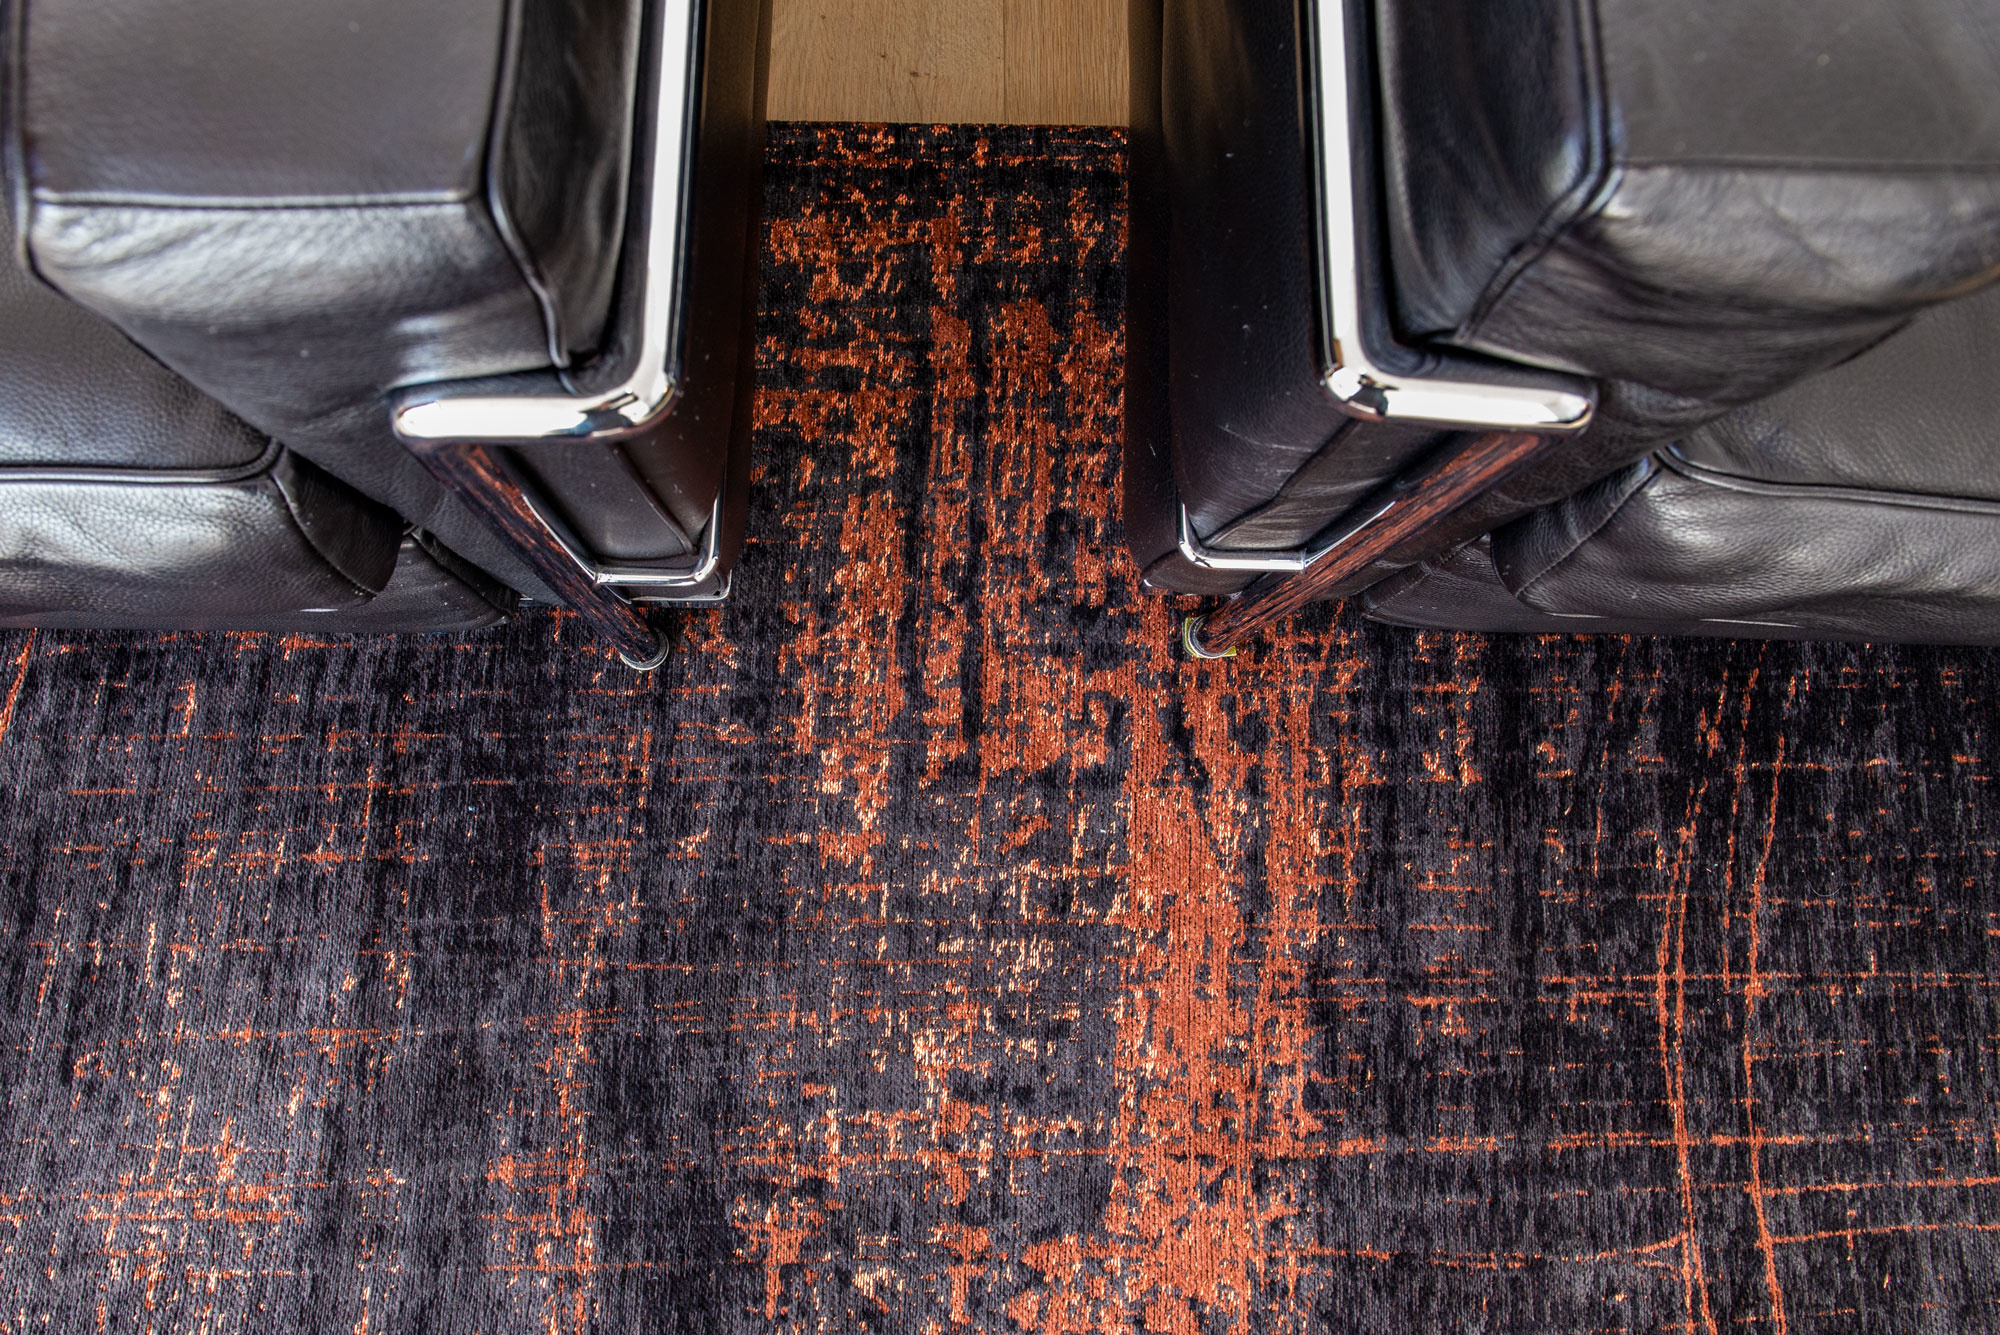 Abstract Indoor Black & Orange Rug ☞ Size: 200 x 280 cm